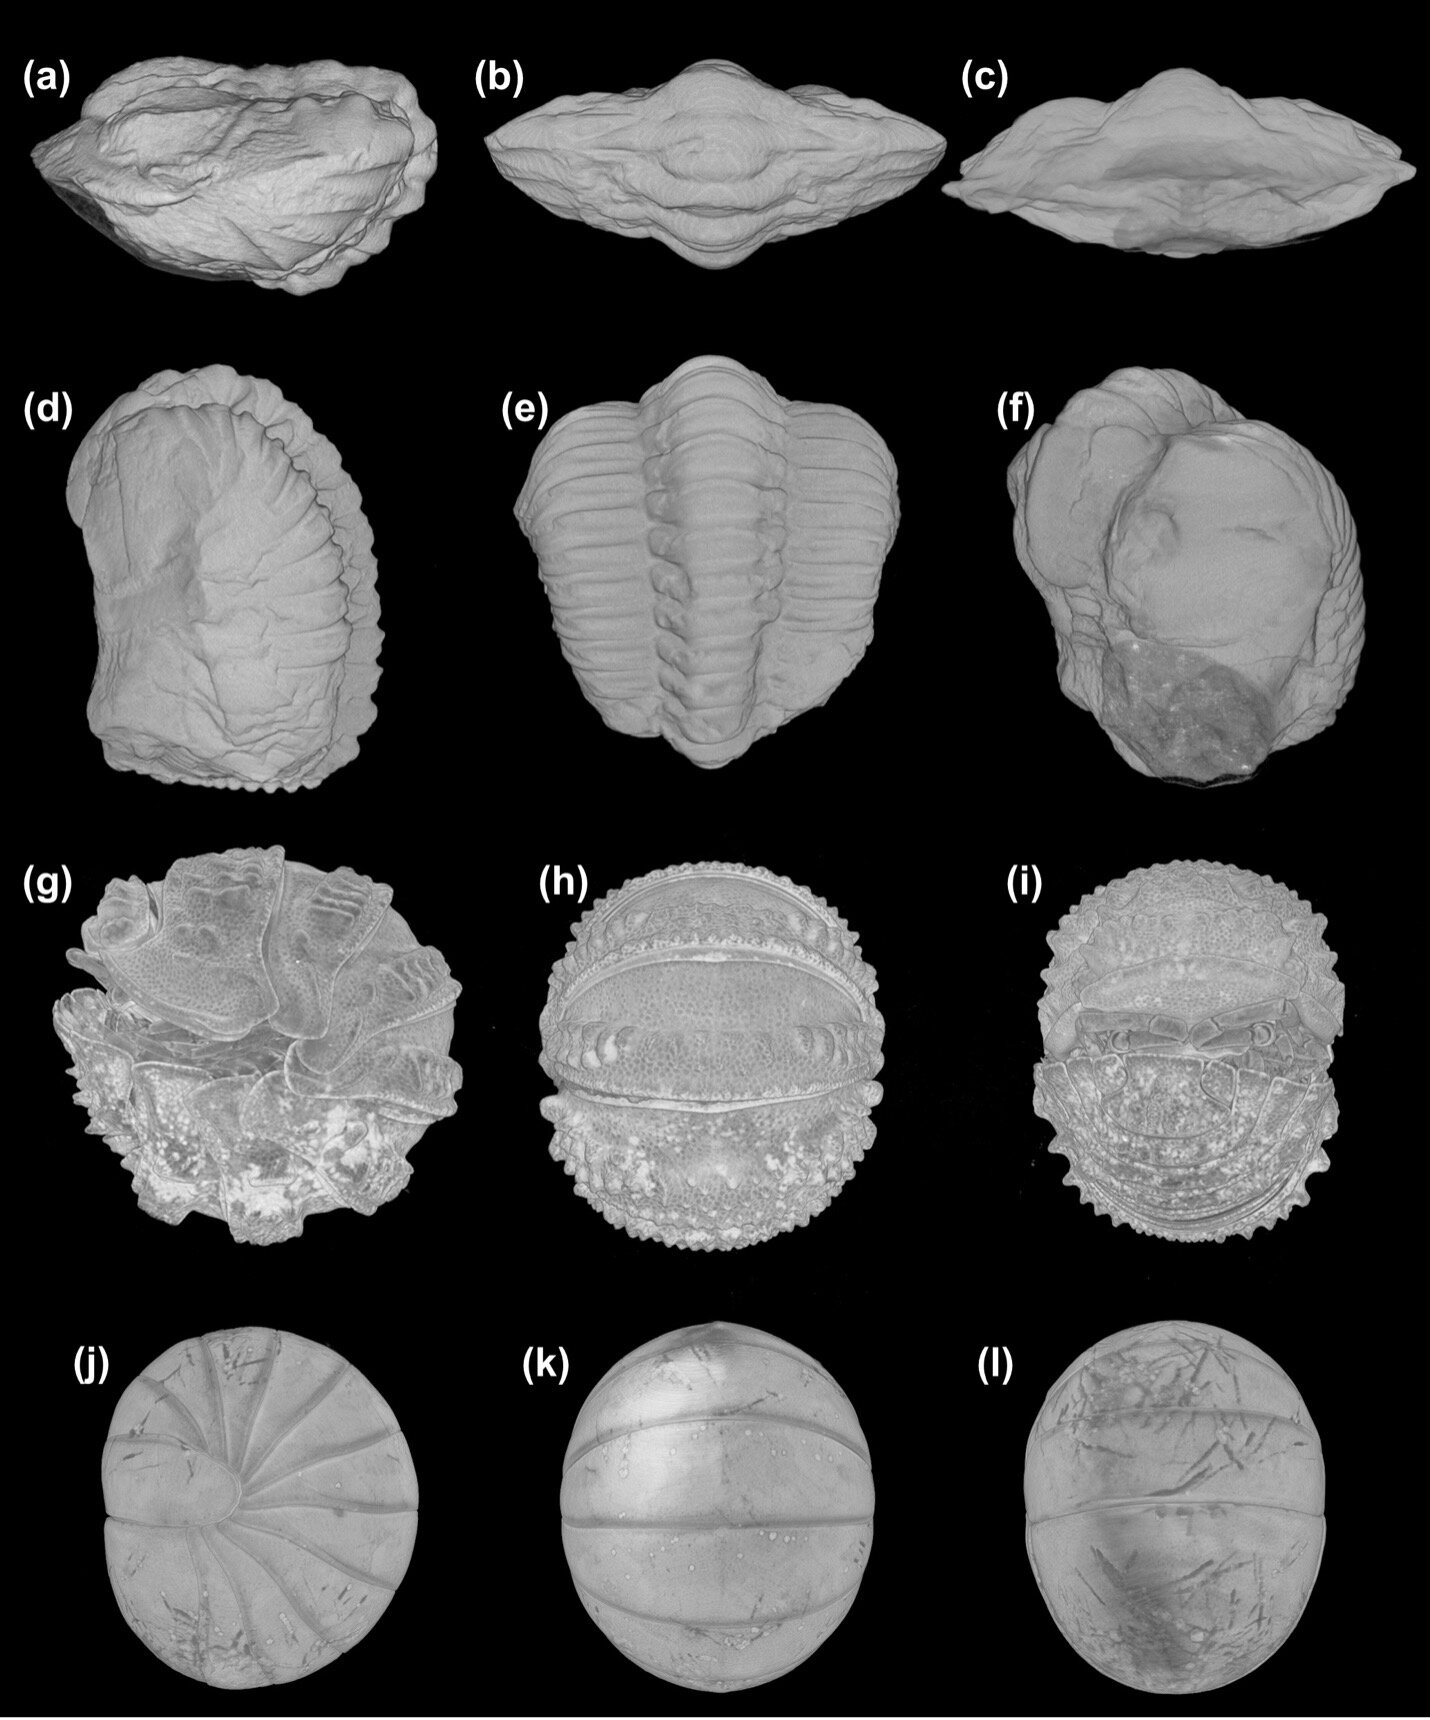 La préservation tridimensionnelle des tissus mous des trilobites met en lumière l’évolution convergente de l’enregistrement défensif